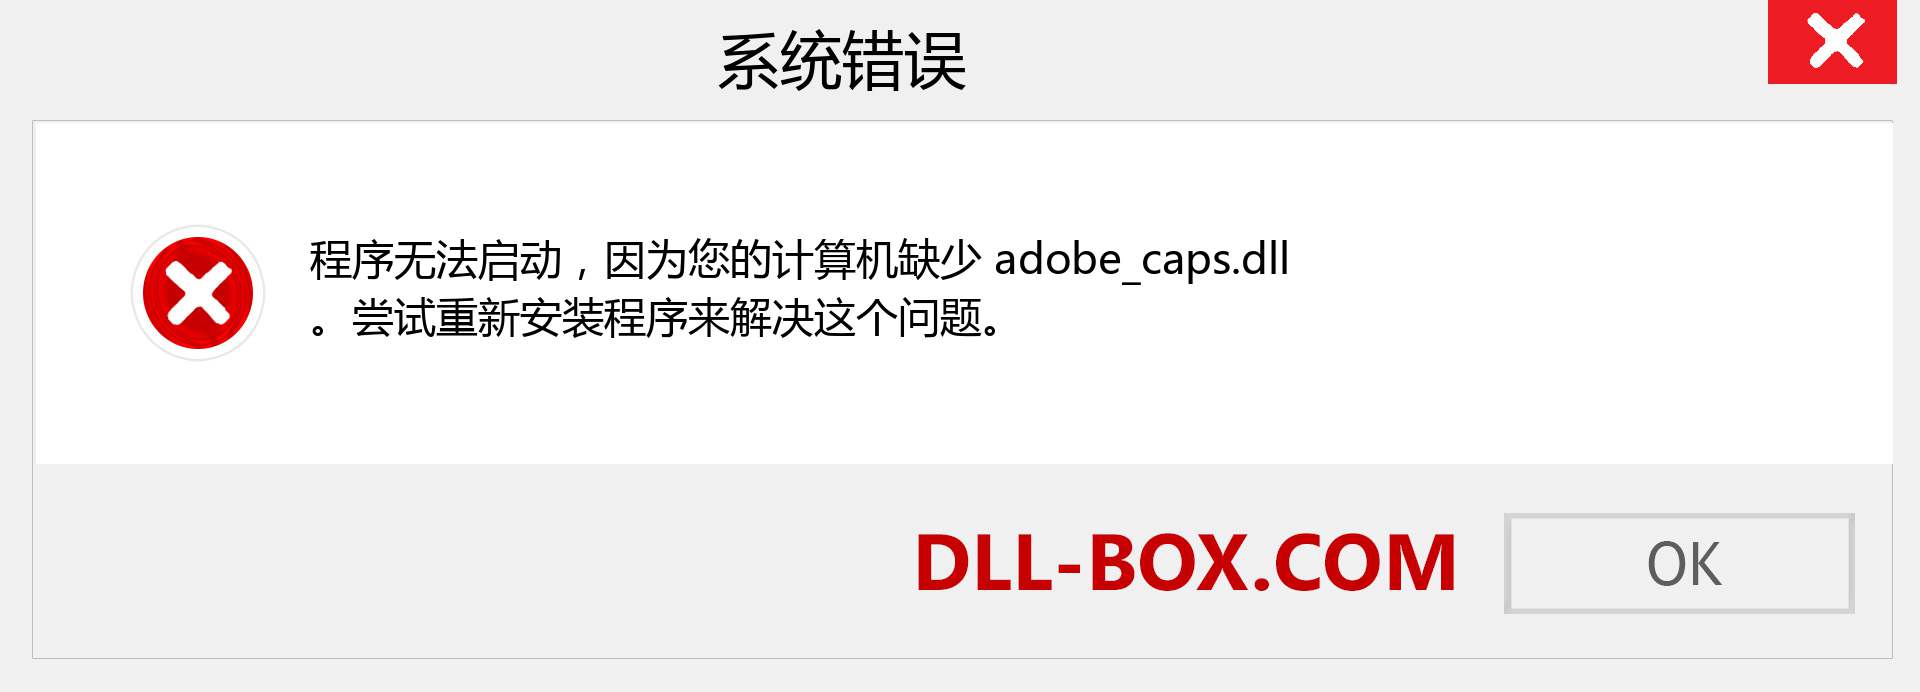 adobe_caps.dll 文件丢失？。 适用于 Windows 7、8、10 的下载 - 修复 Windows、照片、图像上的 adobe_caps dll 丢失错误